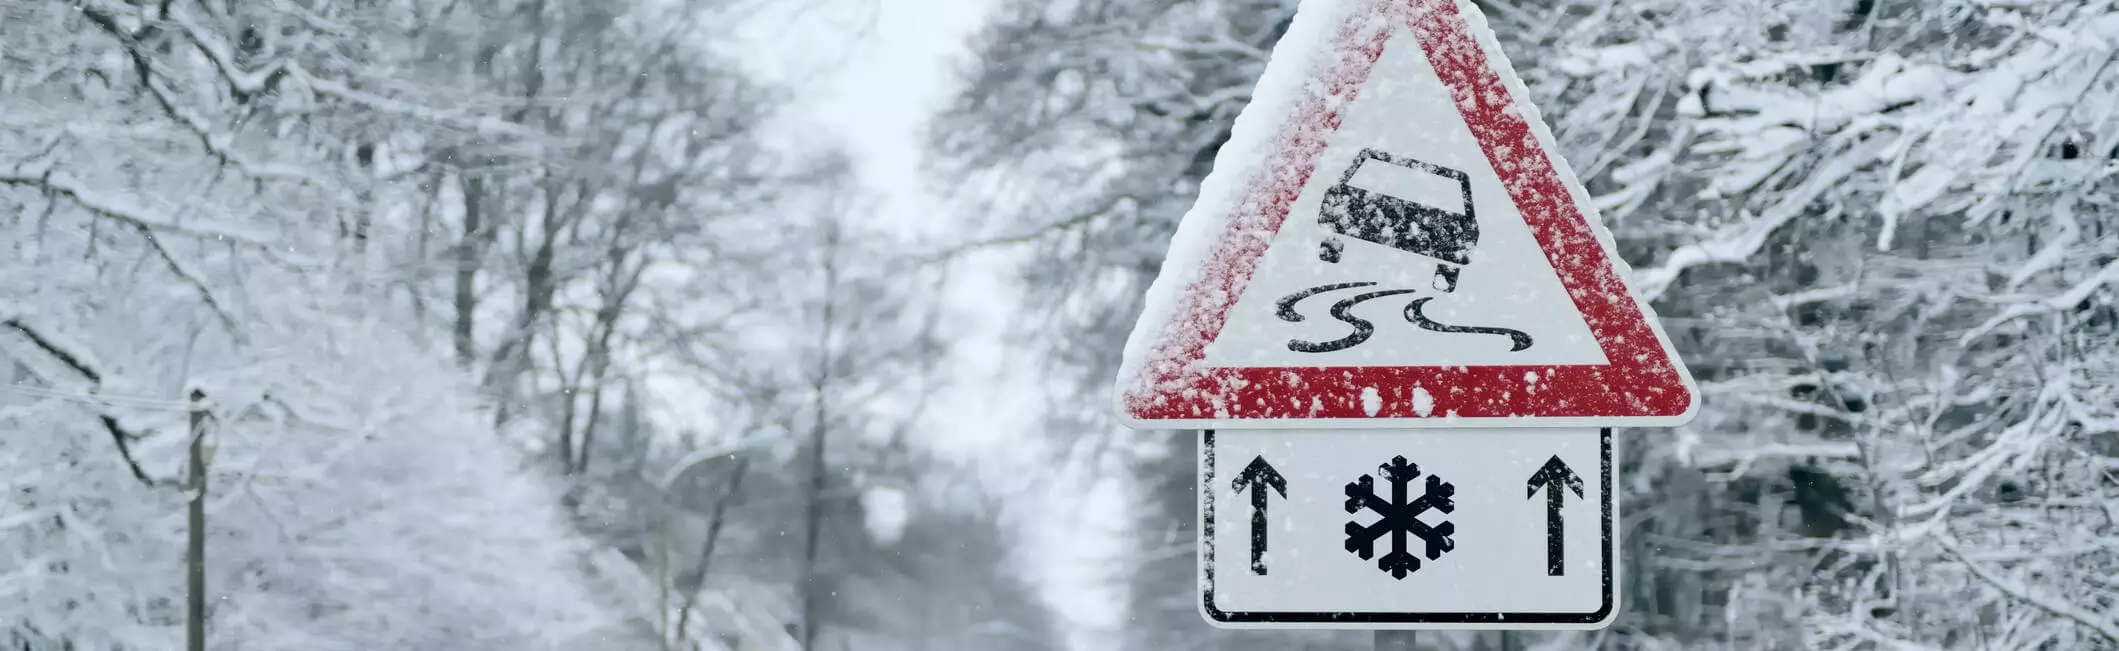 Neve e ghiaccio: come preparare l’auto per viaggiare in sicurezza.